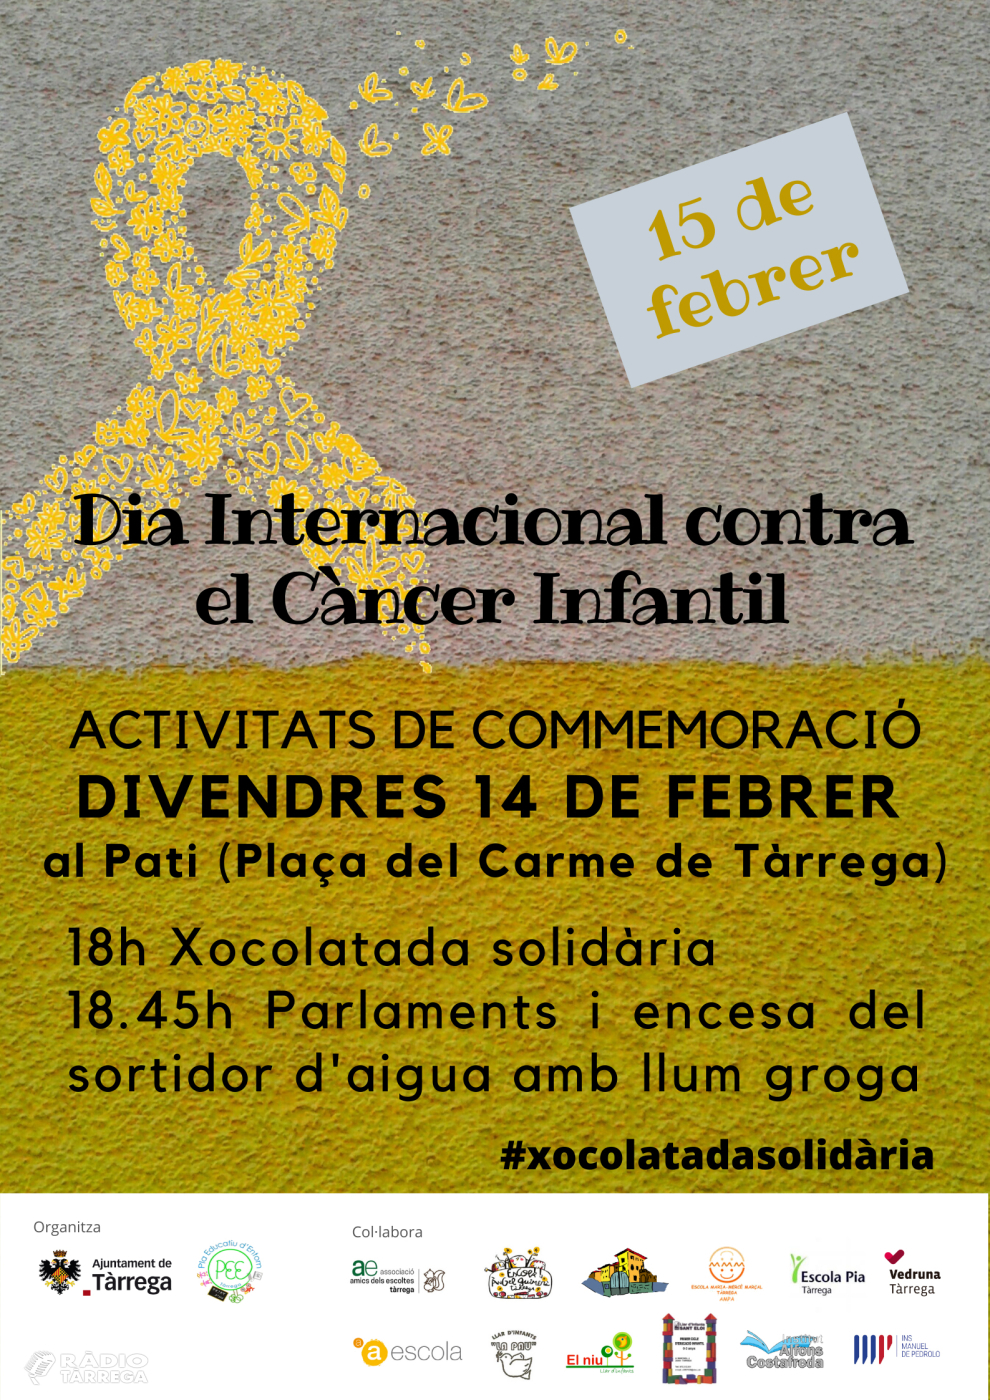 Tàrrega organitza el divendres 14 de febrer un acte solidari contra el càncer infantil